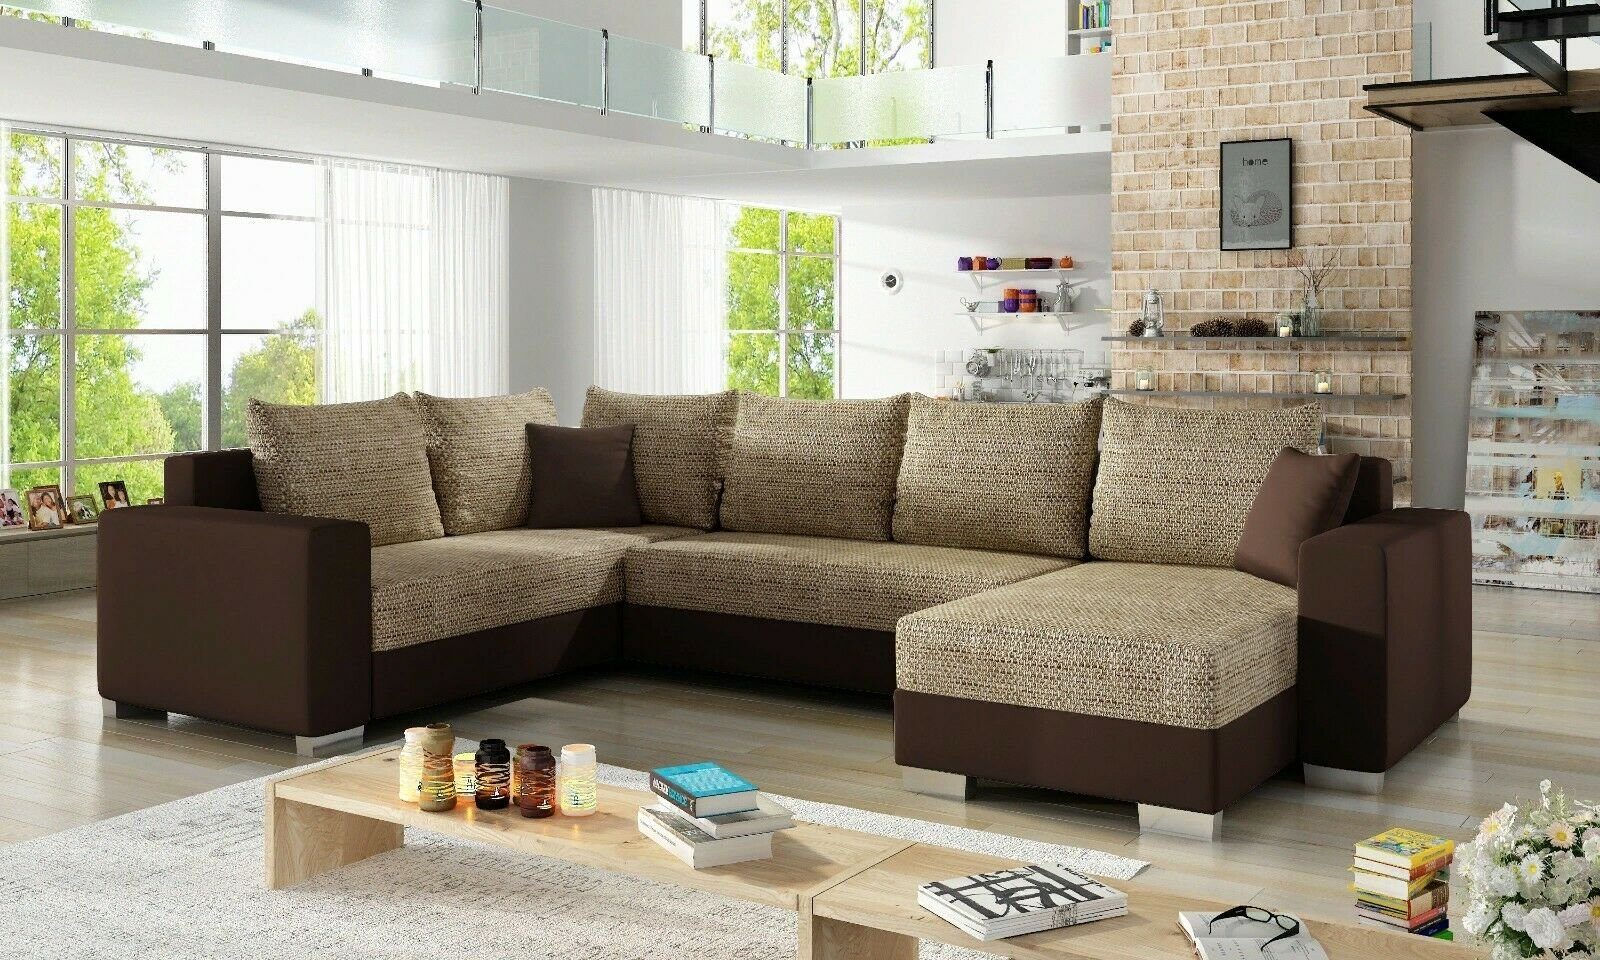 JVmoebel Ecksofa Design Ecksofa Sofa Schlafsofa Bettfunktion Couch Polster Textil, Mit Bettfunktion Hellbraun / Dunkelbraun